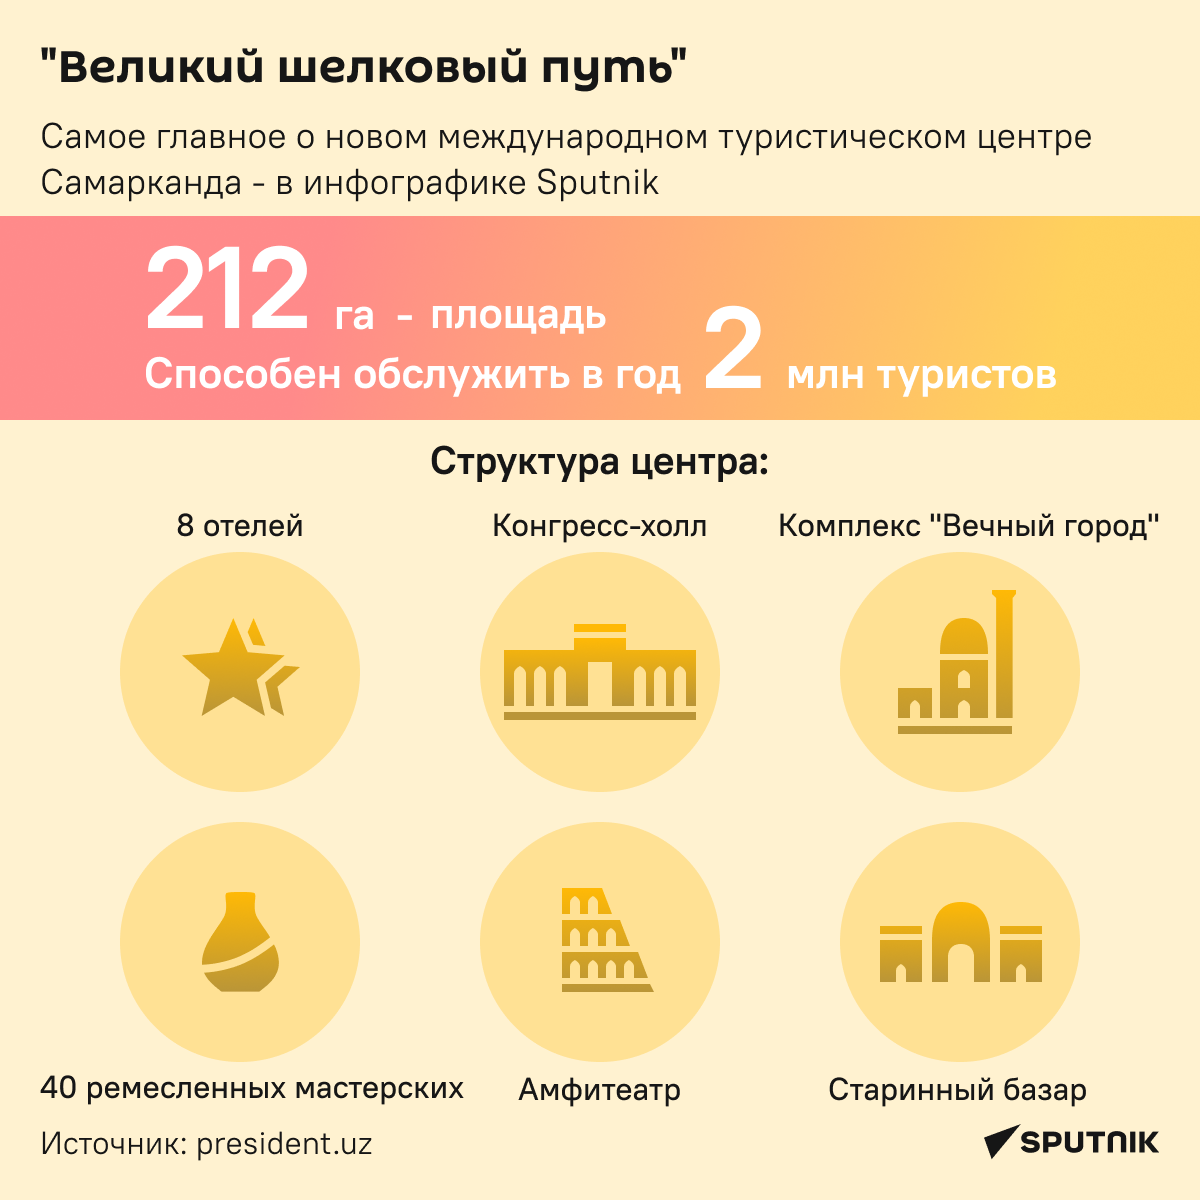 Туристический центр Великий шелковый путь - инфографика - Sputnik Узбекистан